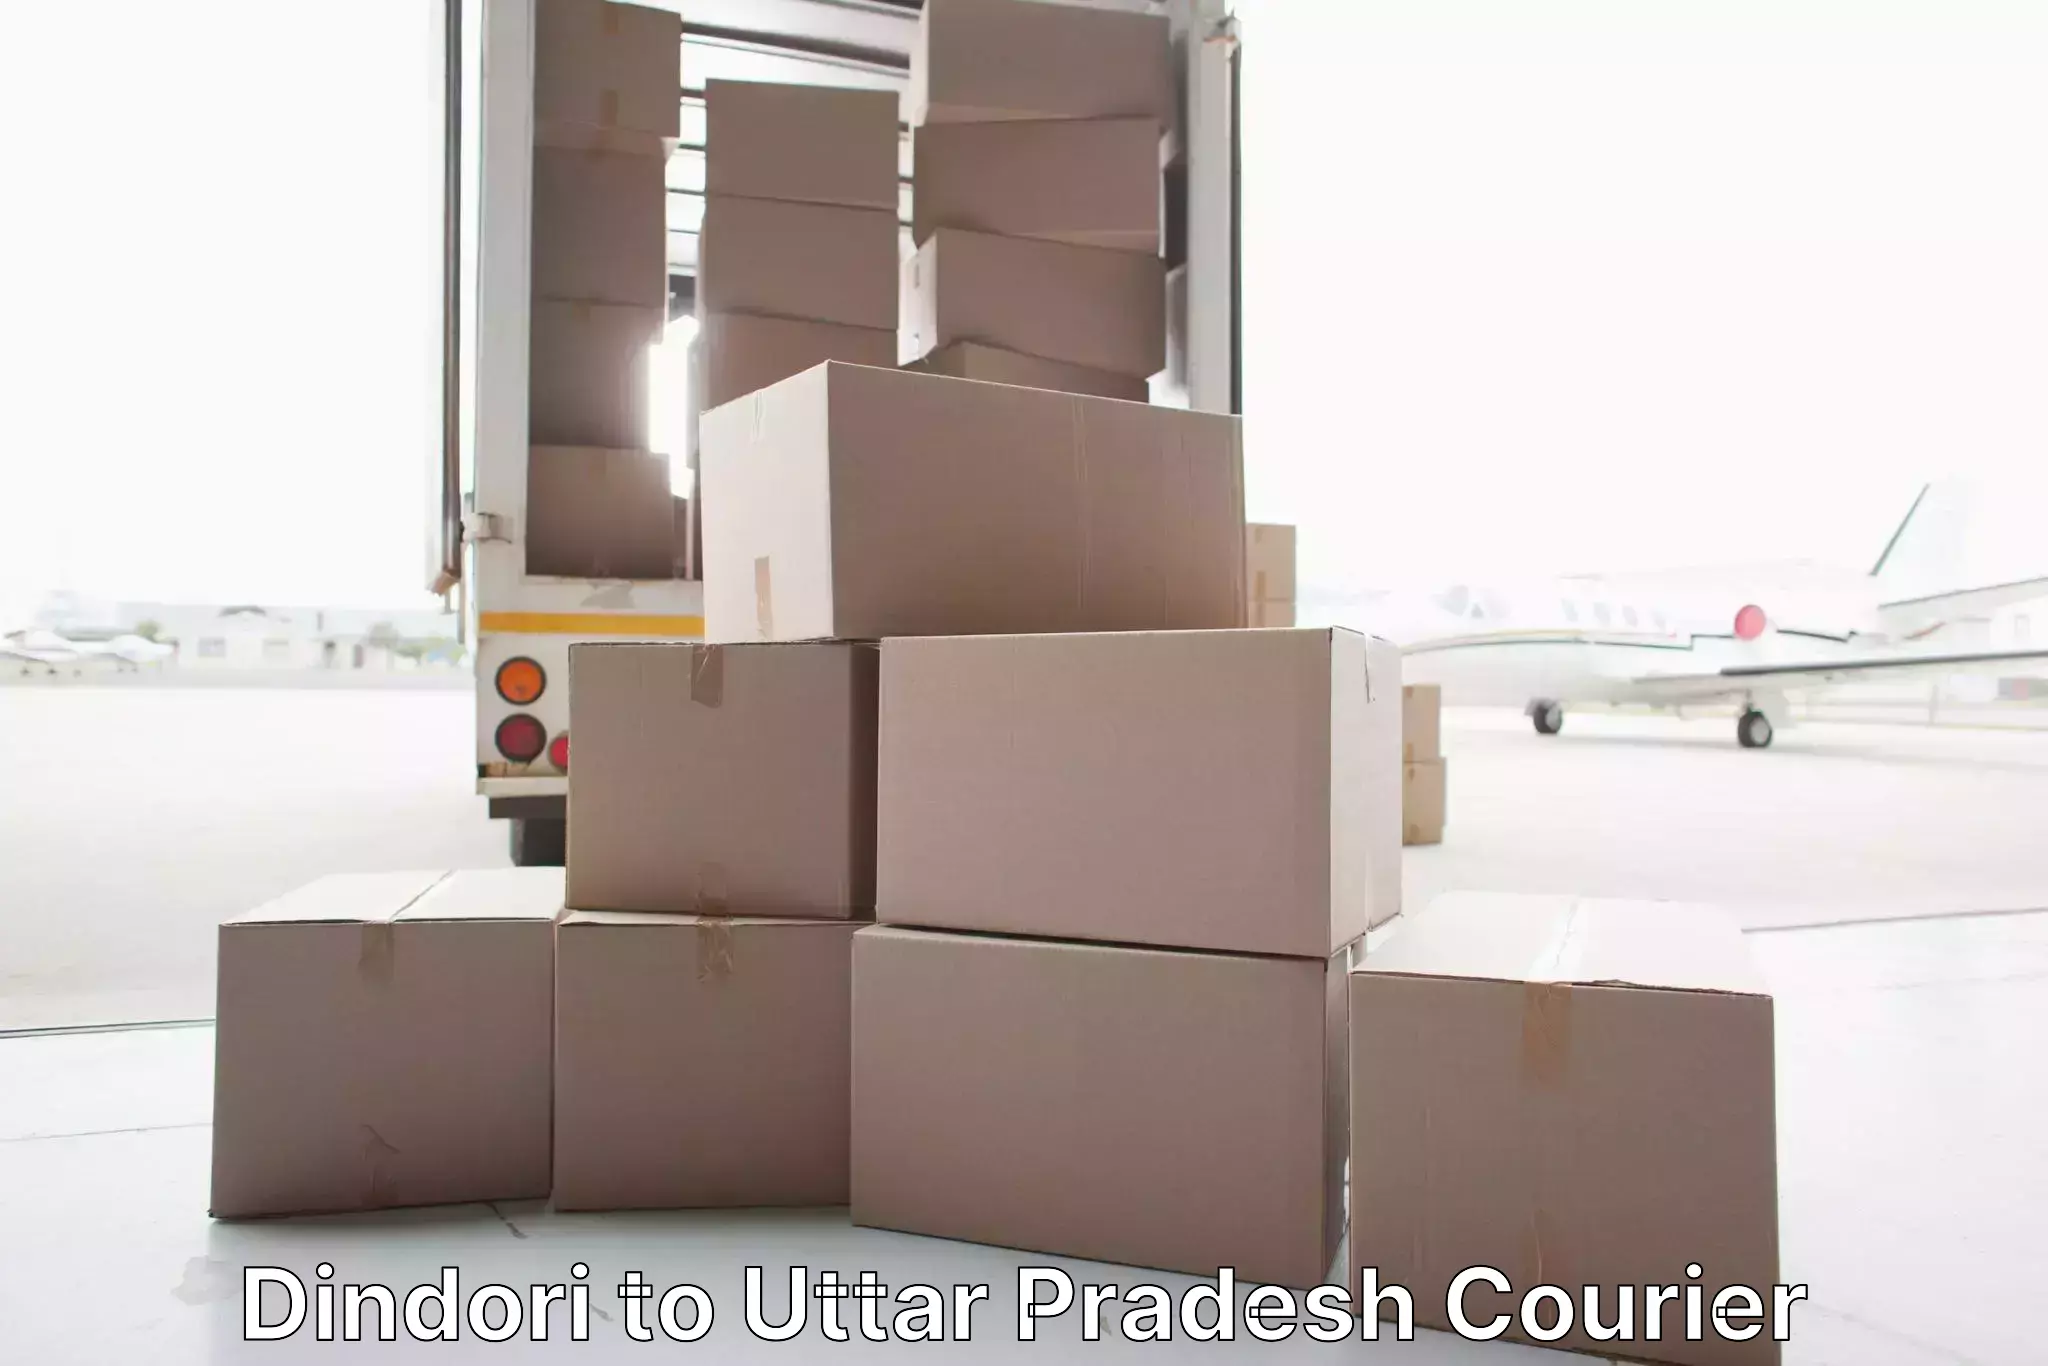 Furniture transport professionals in Dindori to Bharwari